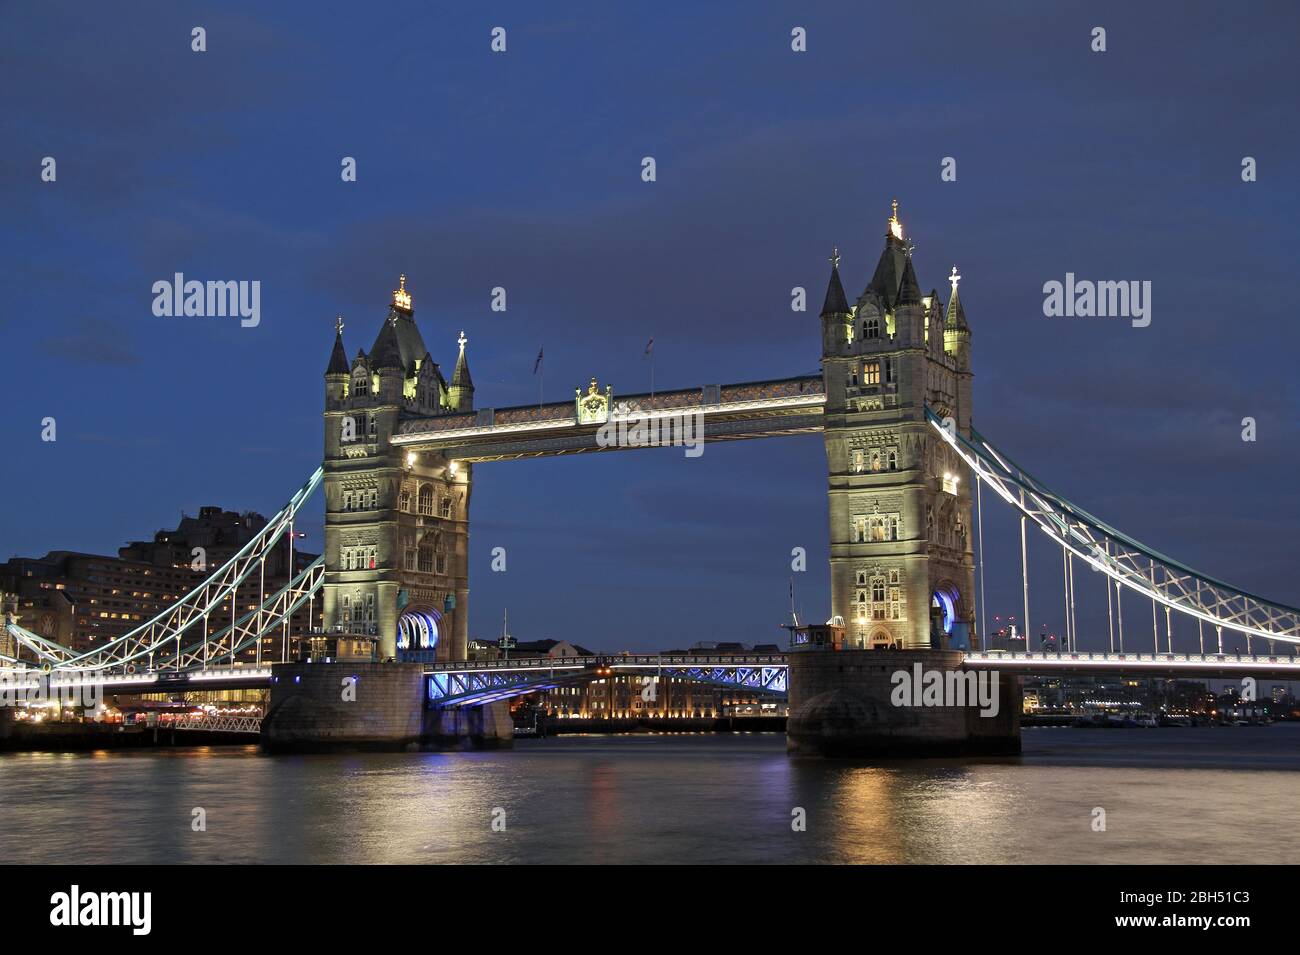 El mundialmente famoso Puente de Londres está a guardia sobre el río Támesis en la ciudad de Londres, Inglaterra el 13 de marzo de 2020 en Londres, Inglaterra Foto de stock